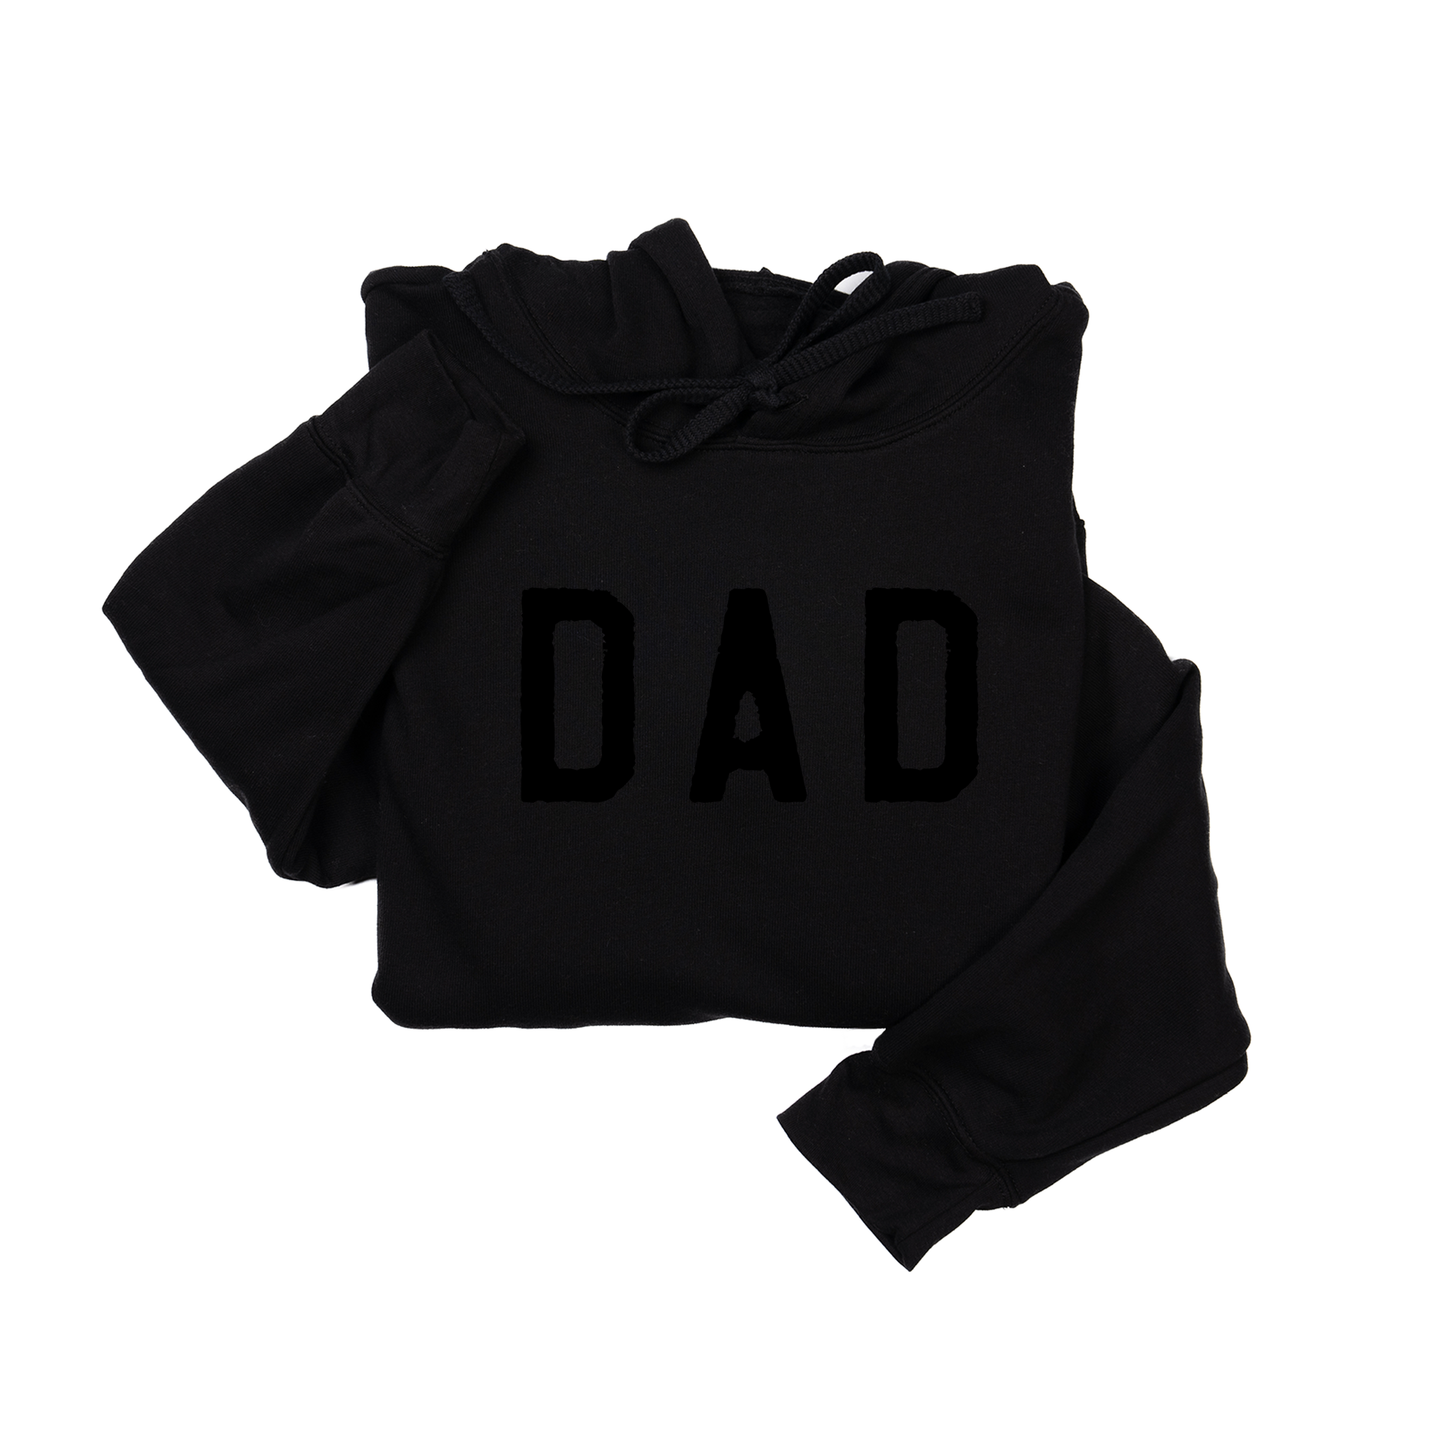 Dad (Rough, Black) - Hoodie (Black)